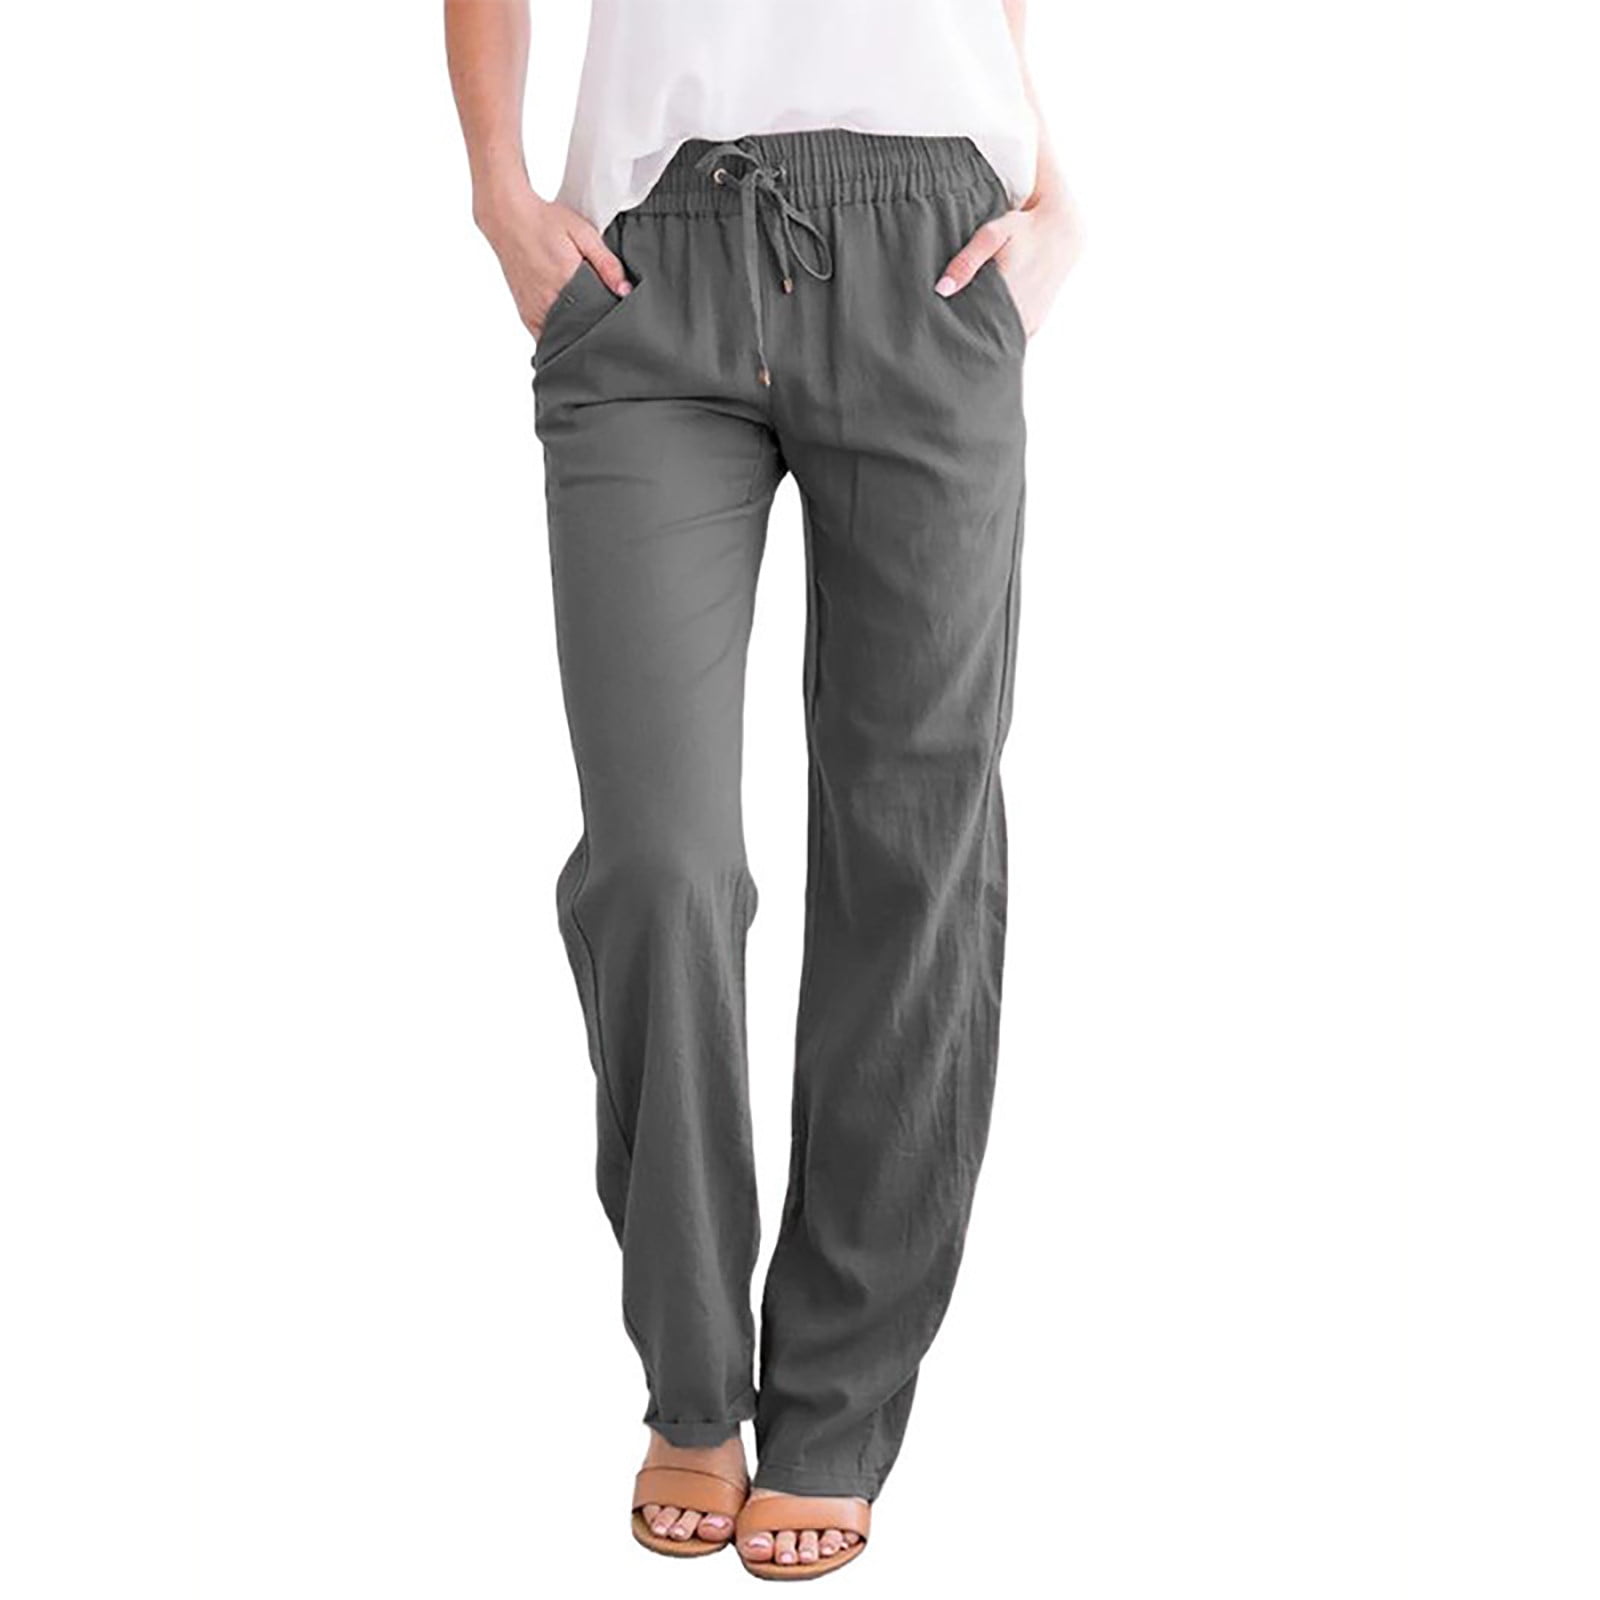 Mixpiju Capri Pants for Women Plus Size, Solid Color Cotton Linen ...